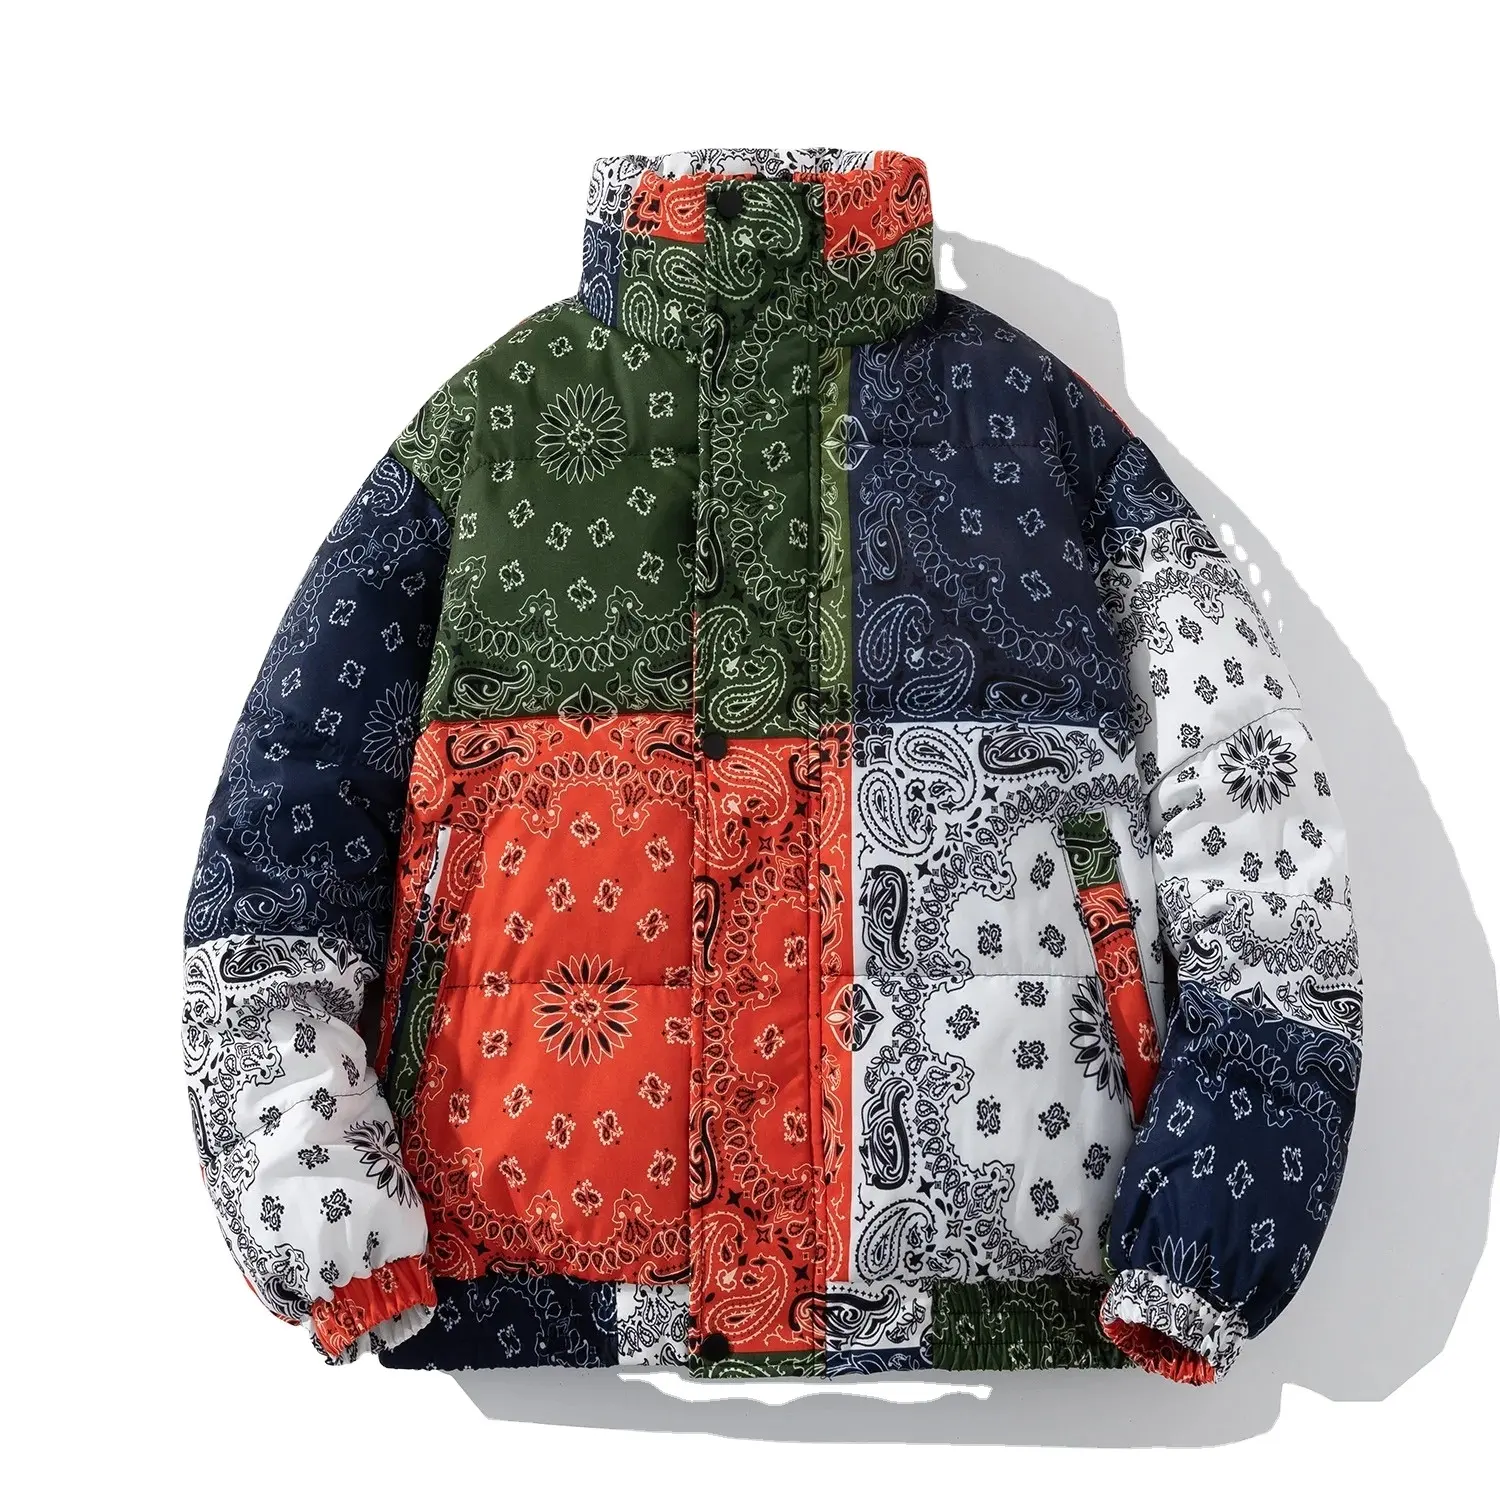 Nefes yüksek kalite balon ceket s yeni tasarımlar kalınlaşmak sıcak Hip Hop Streetwear yüksek kalite balon ceket